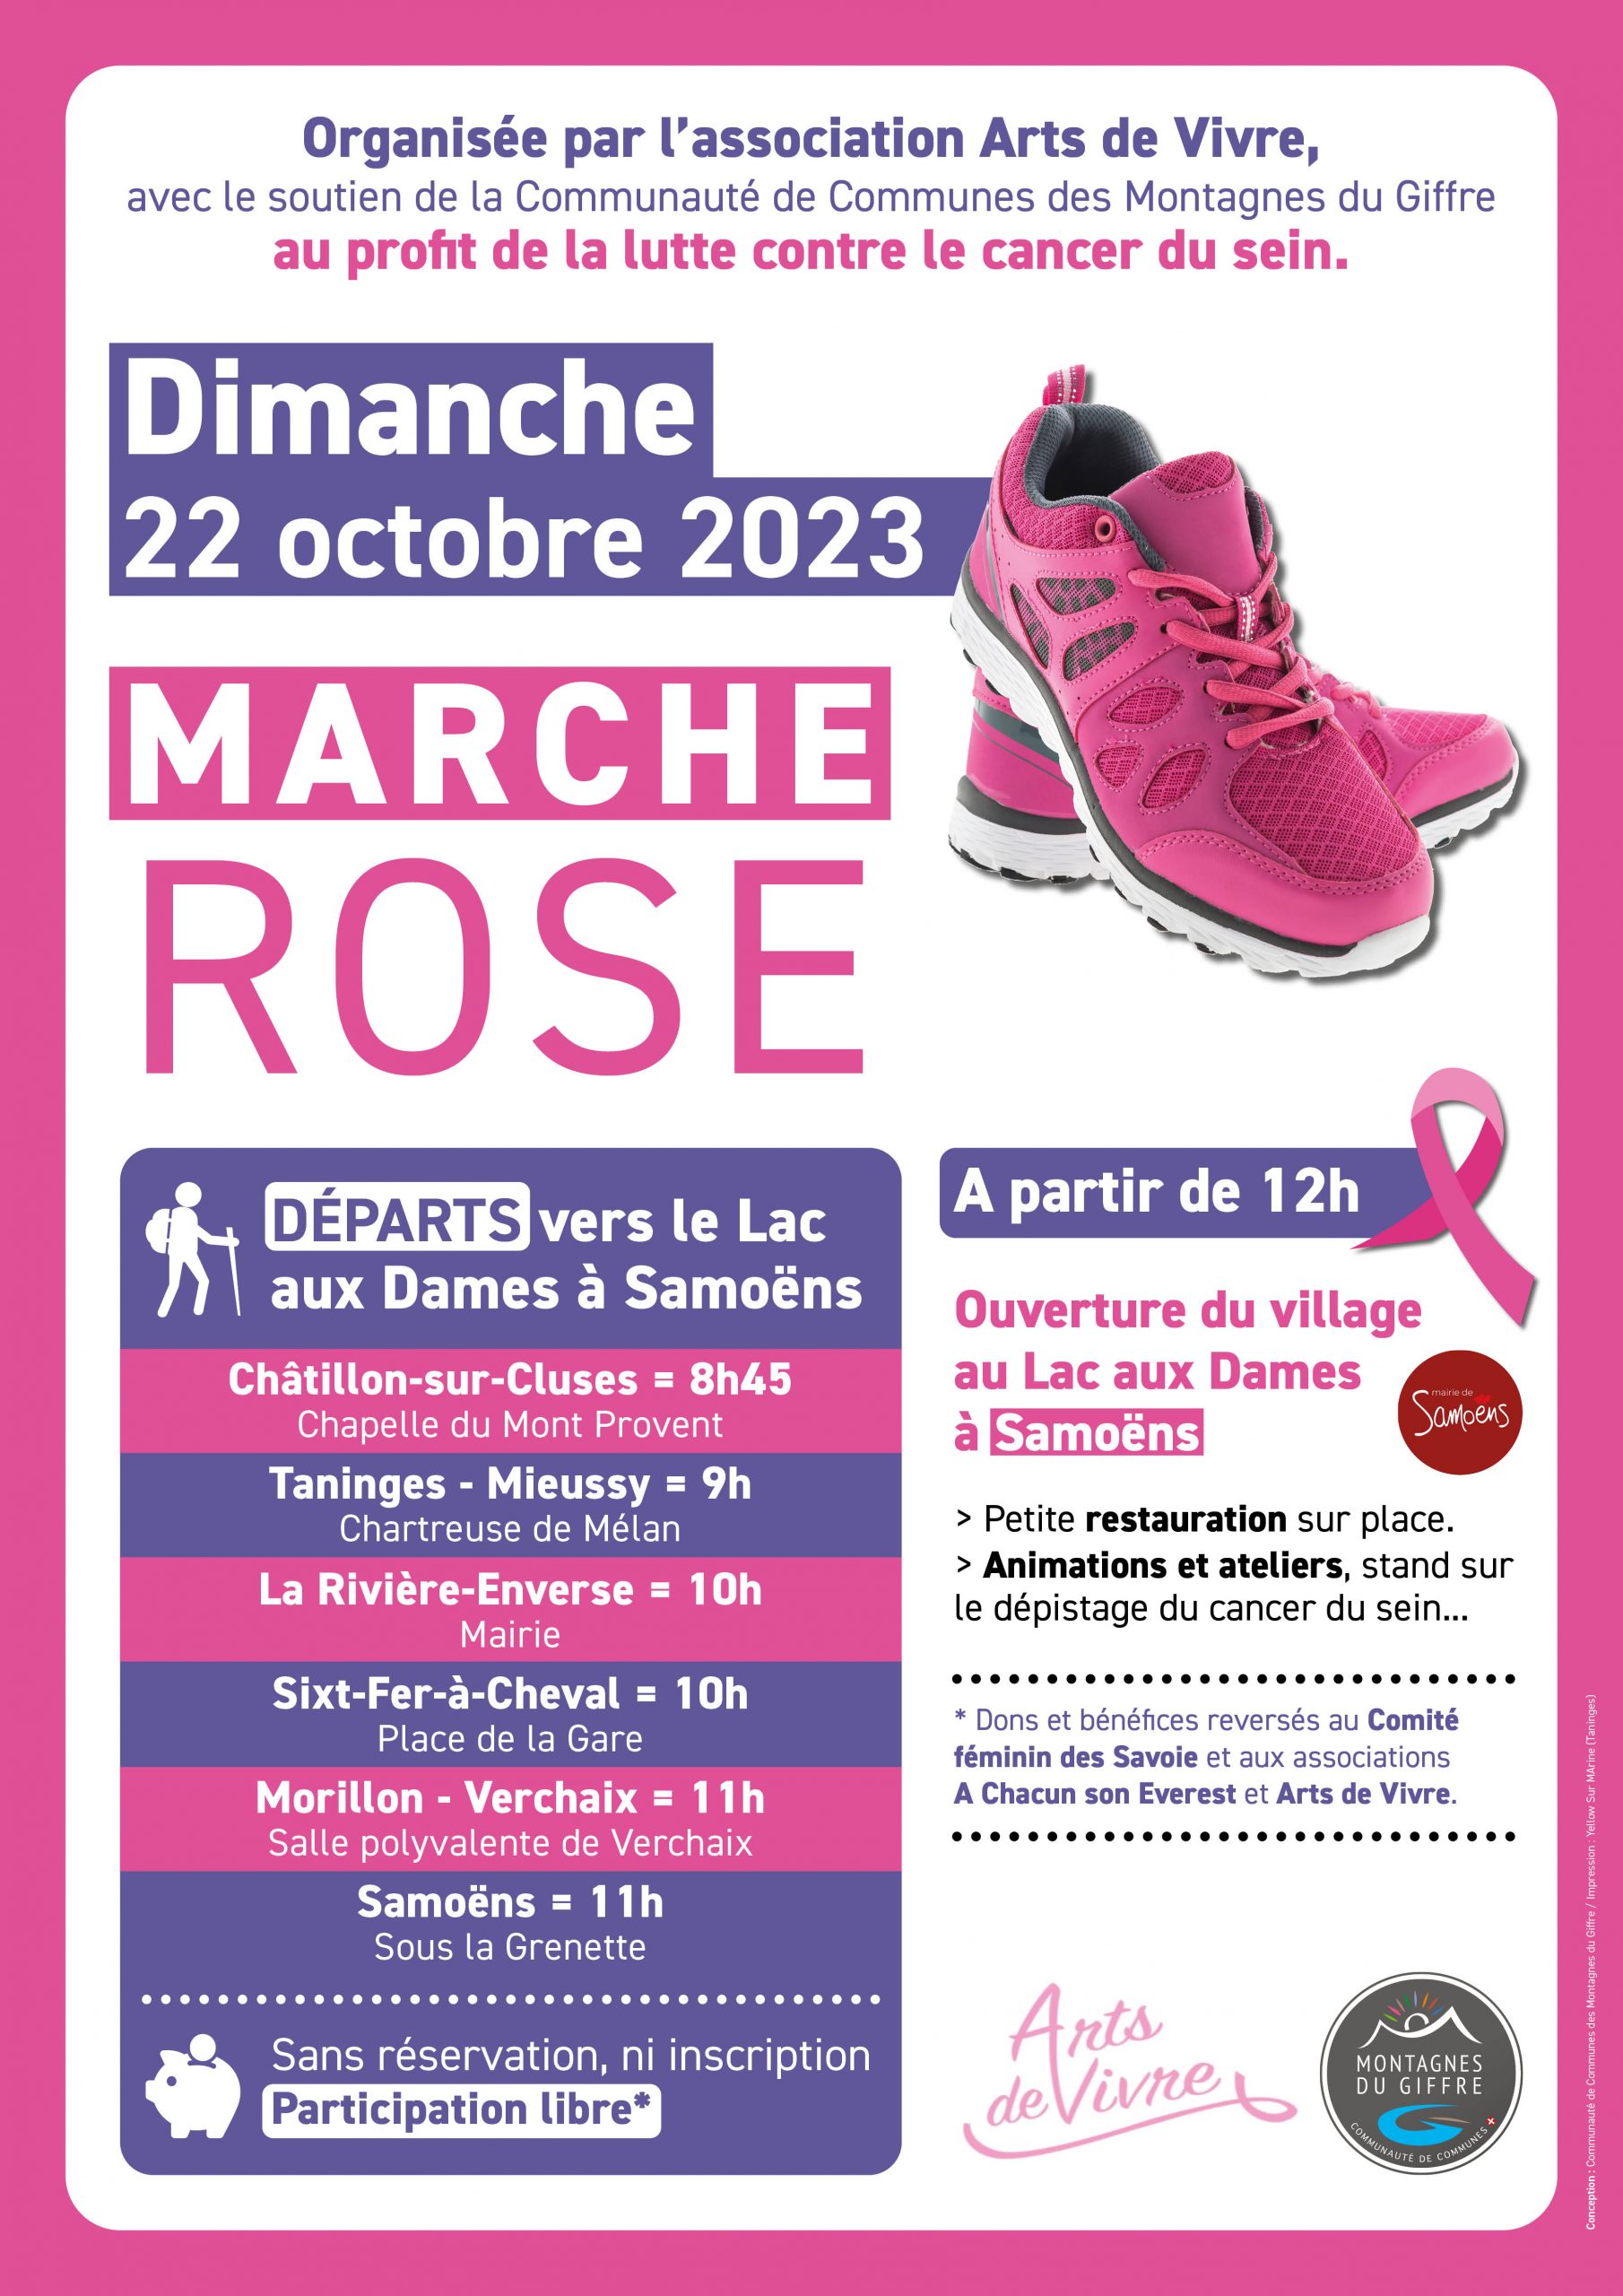 La marche rose solidaire revient le 22 octobre 2023